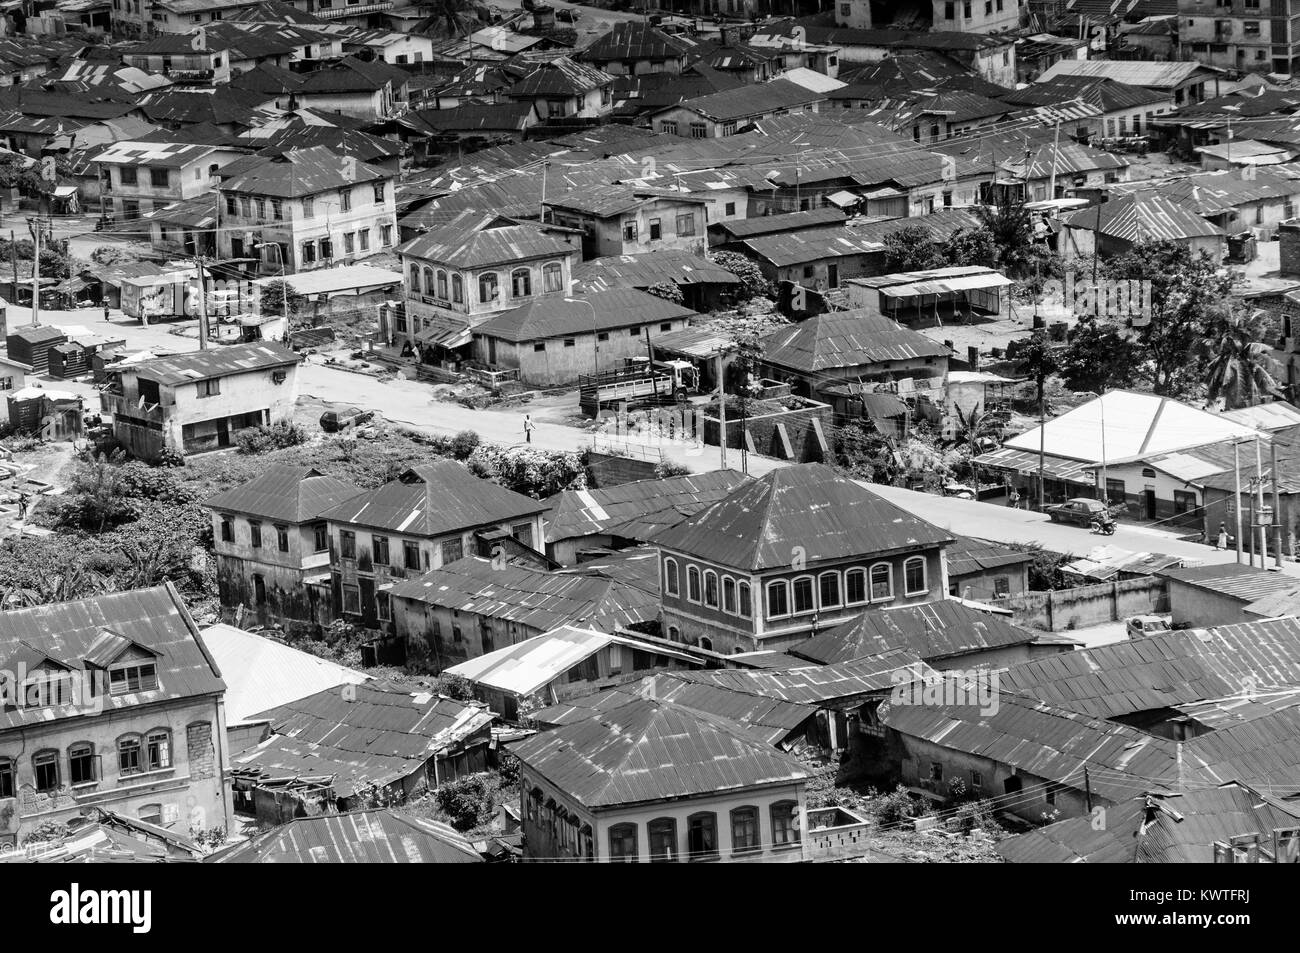 Luftaufnahme der Stadt in abeokuta Ogun state, Nigeria. Stockfoto